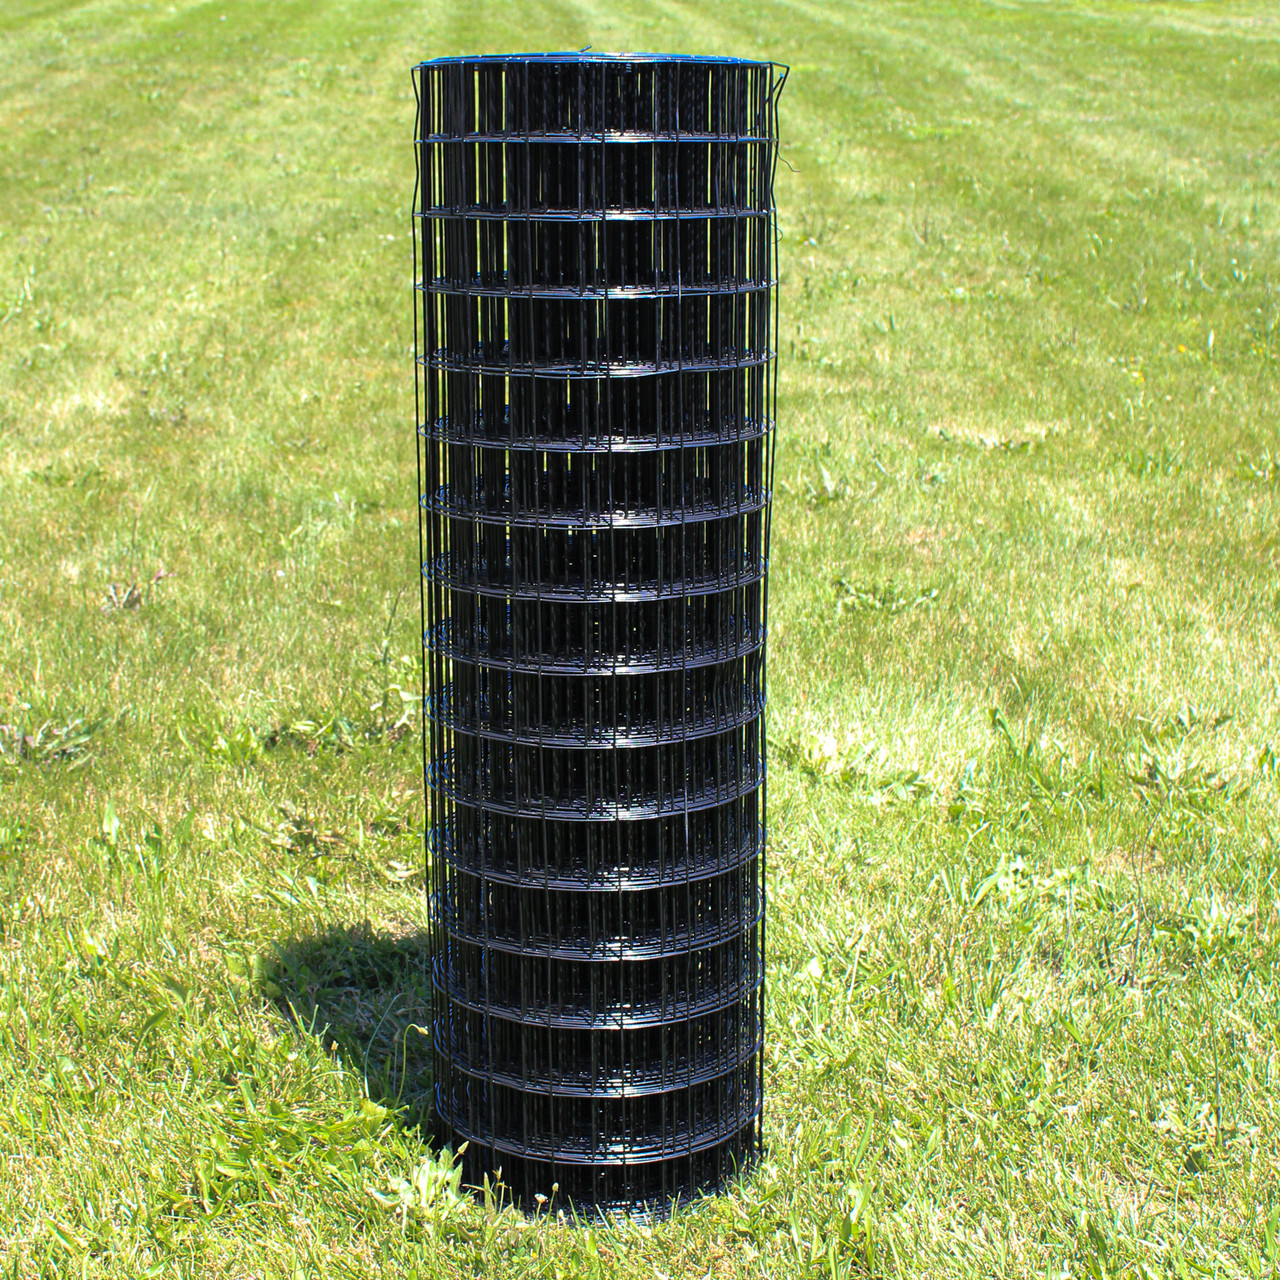  3mm x 20m Garden Wire Galvanised : Patio, Lawn & Garden